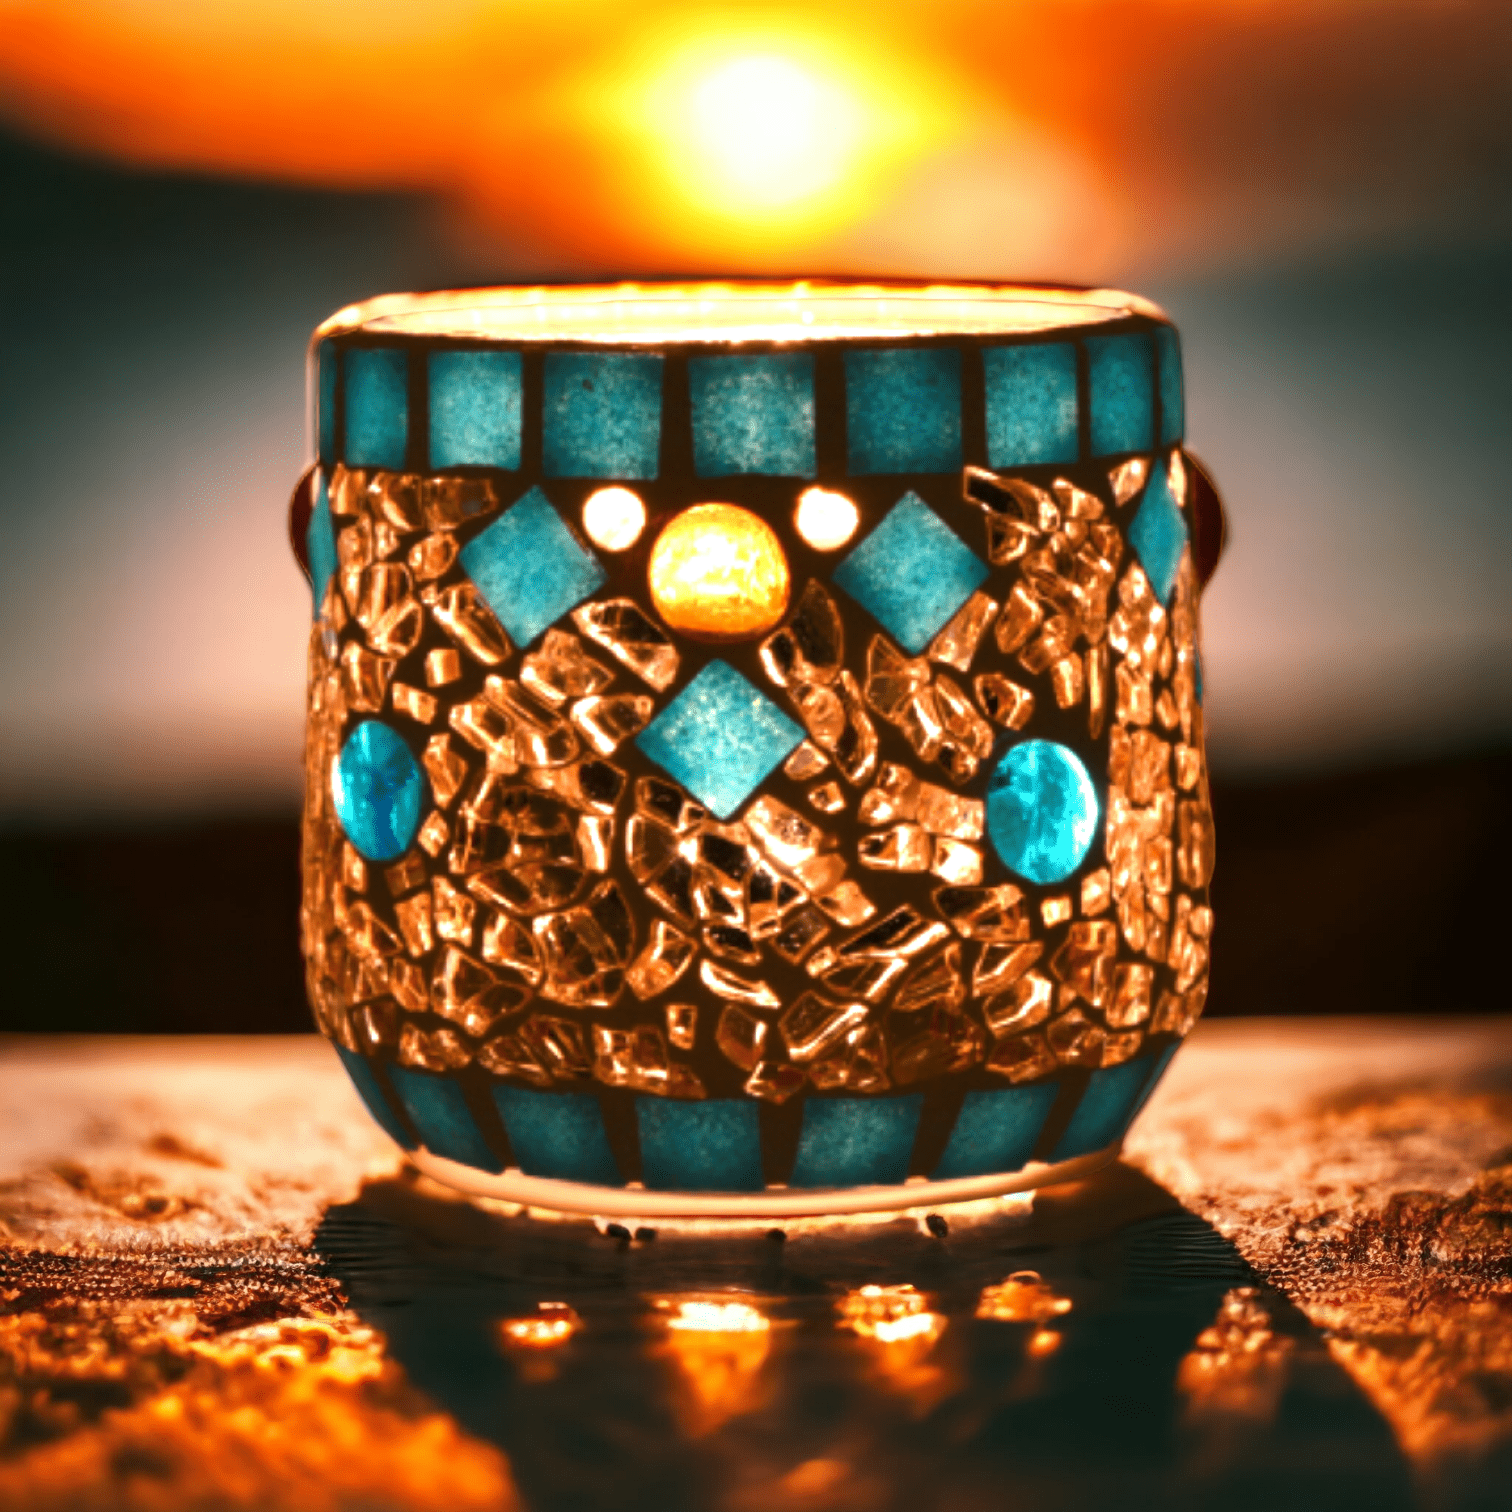 Mosaik Windlicht türkis gold 7 cm hoch - handgemacht - Mosaikkasten abverkauf aus alt mach neu